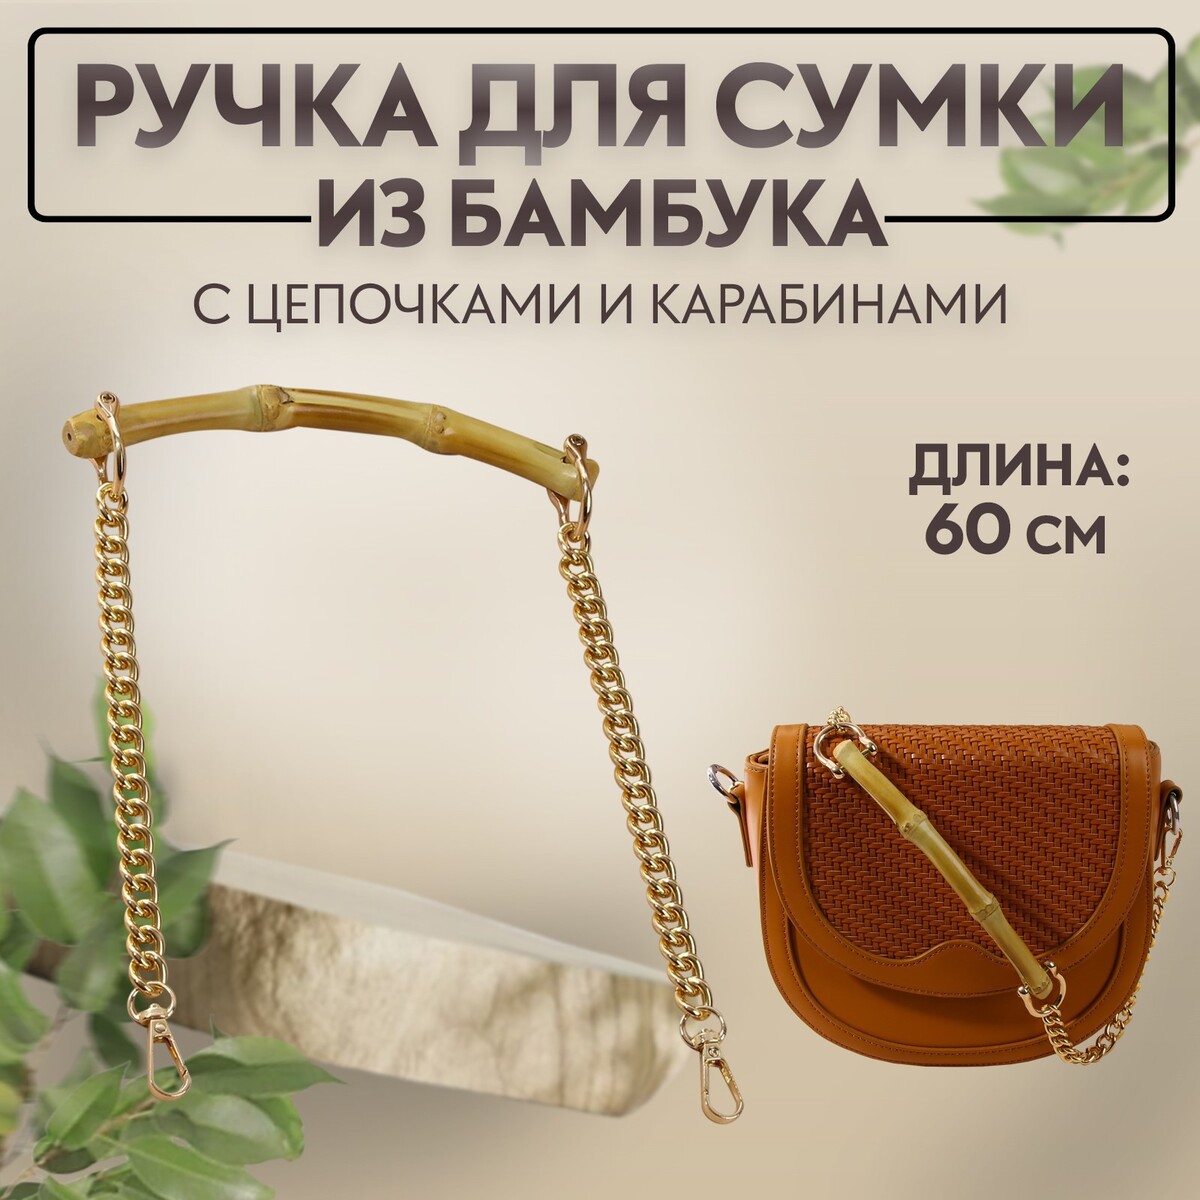 Ручка для сумки, бамбук, с цепочками и карабинами, 60 см, цвет золотой ручка для сумки бусы d 14 мм 60 см золотой